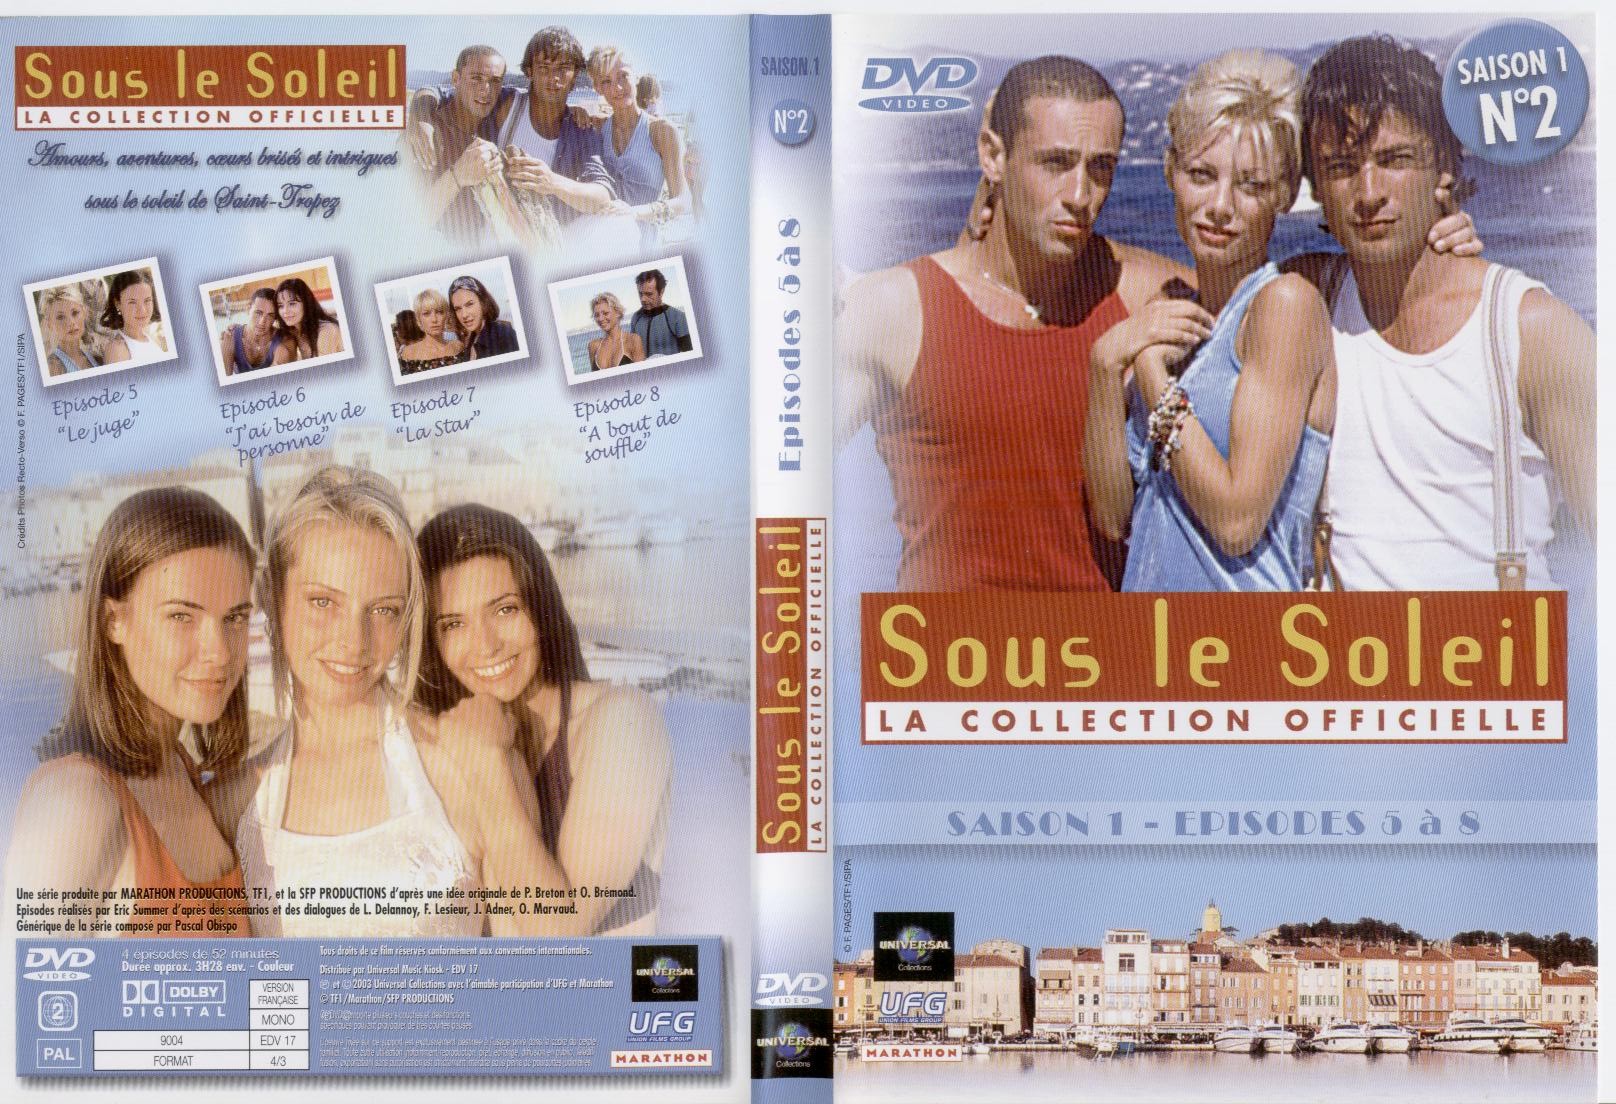 Jaquette DVD Sous le soleil saison 1 vol 2